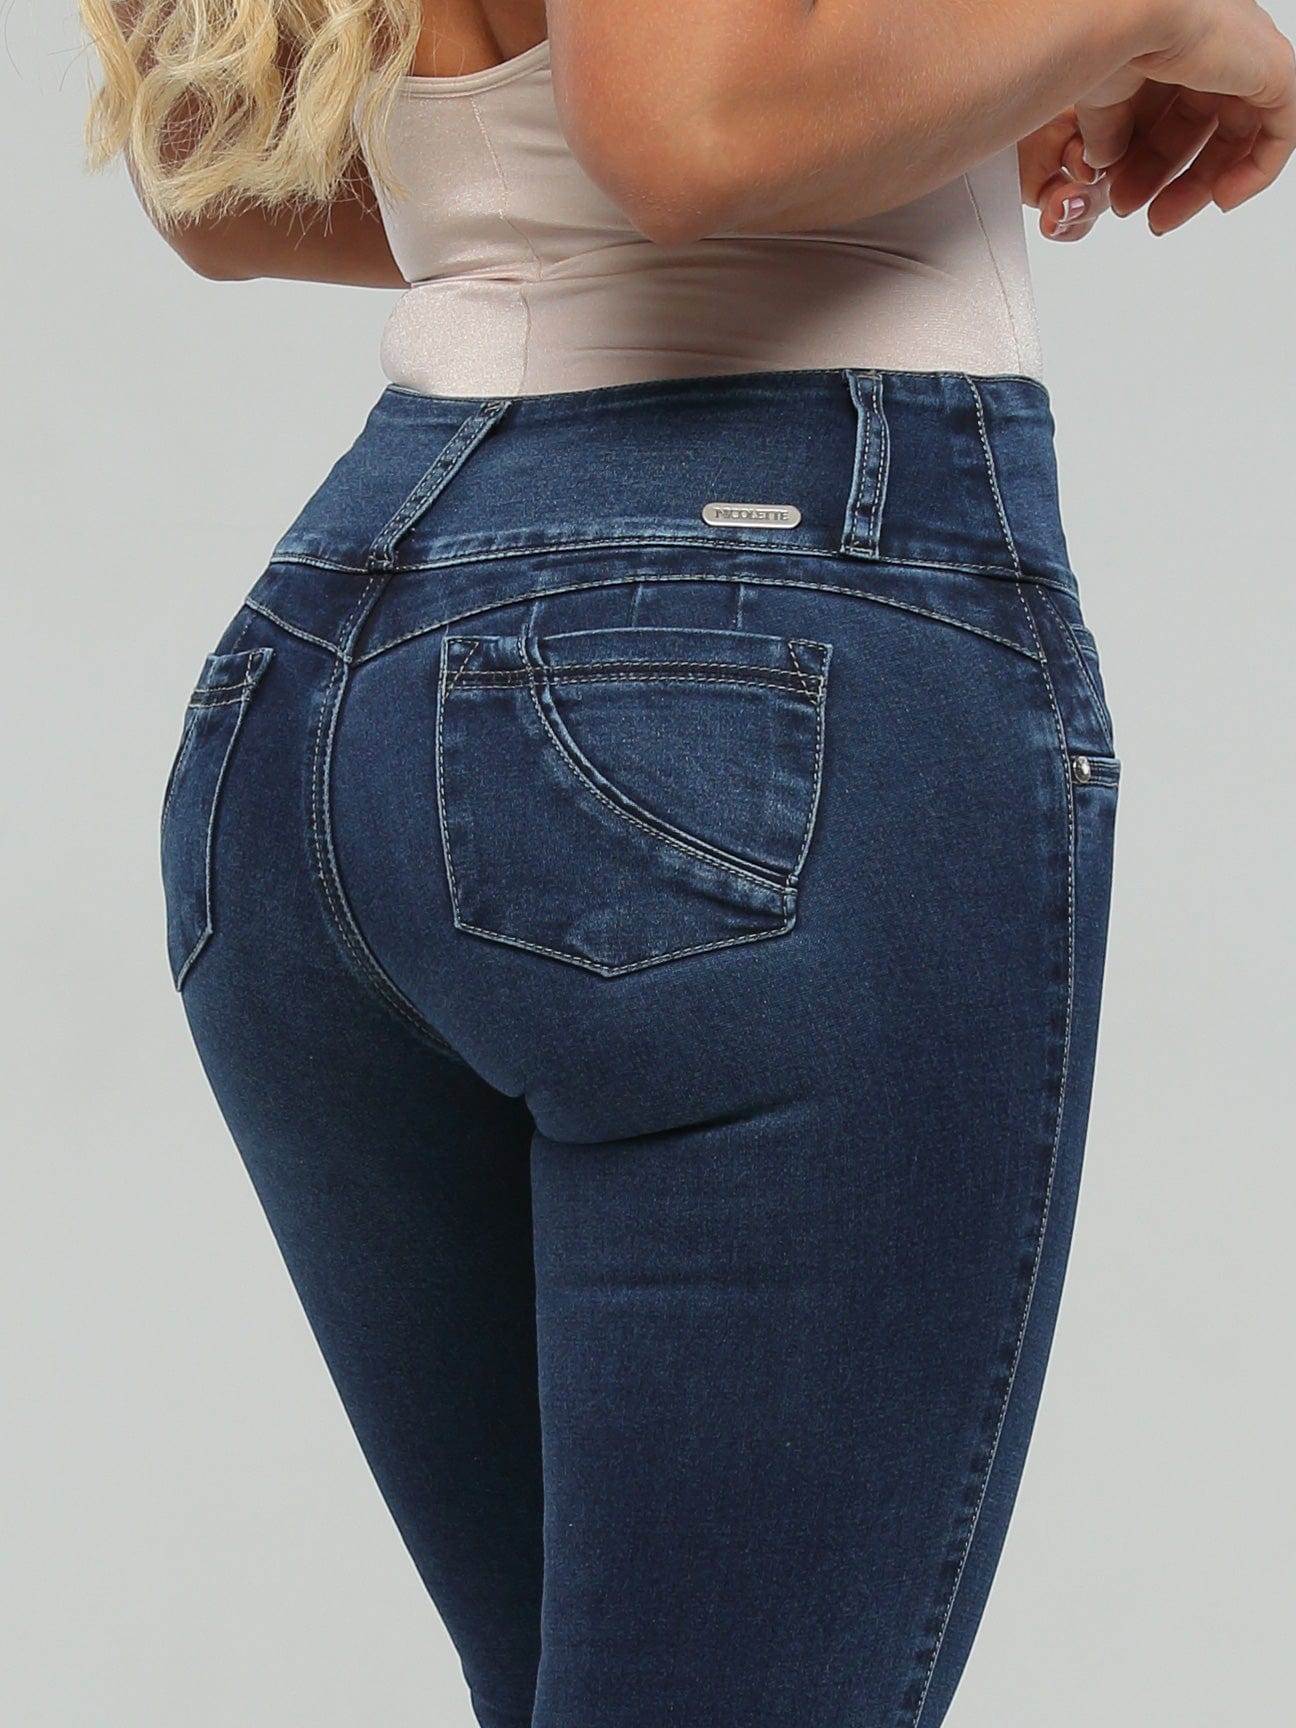 Apple Butt Lift Jeans 15163